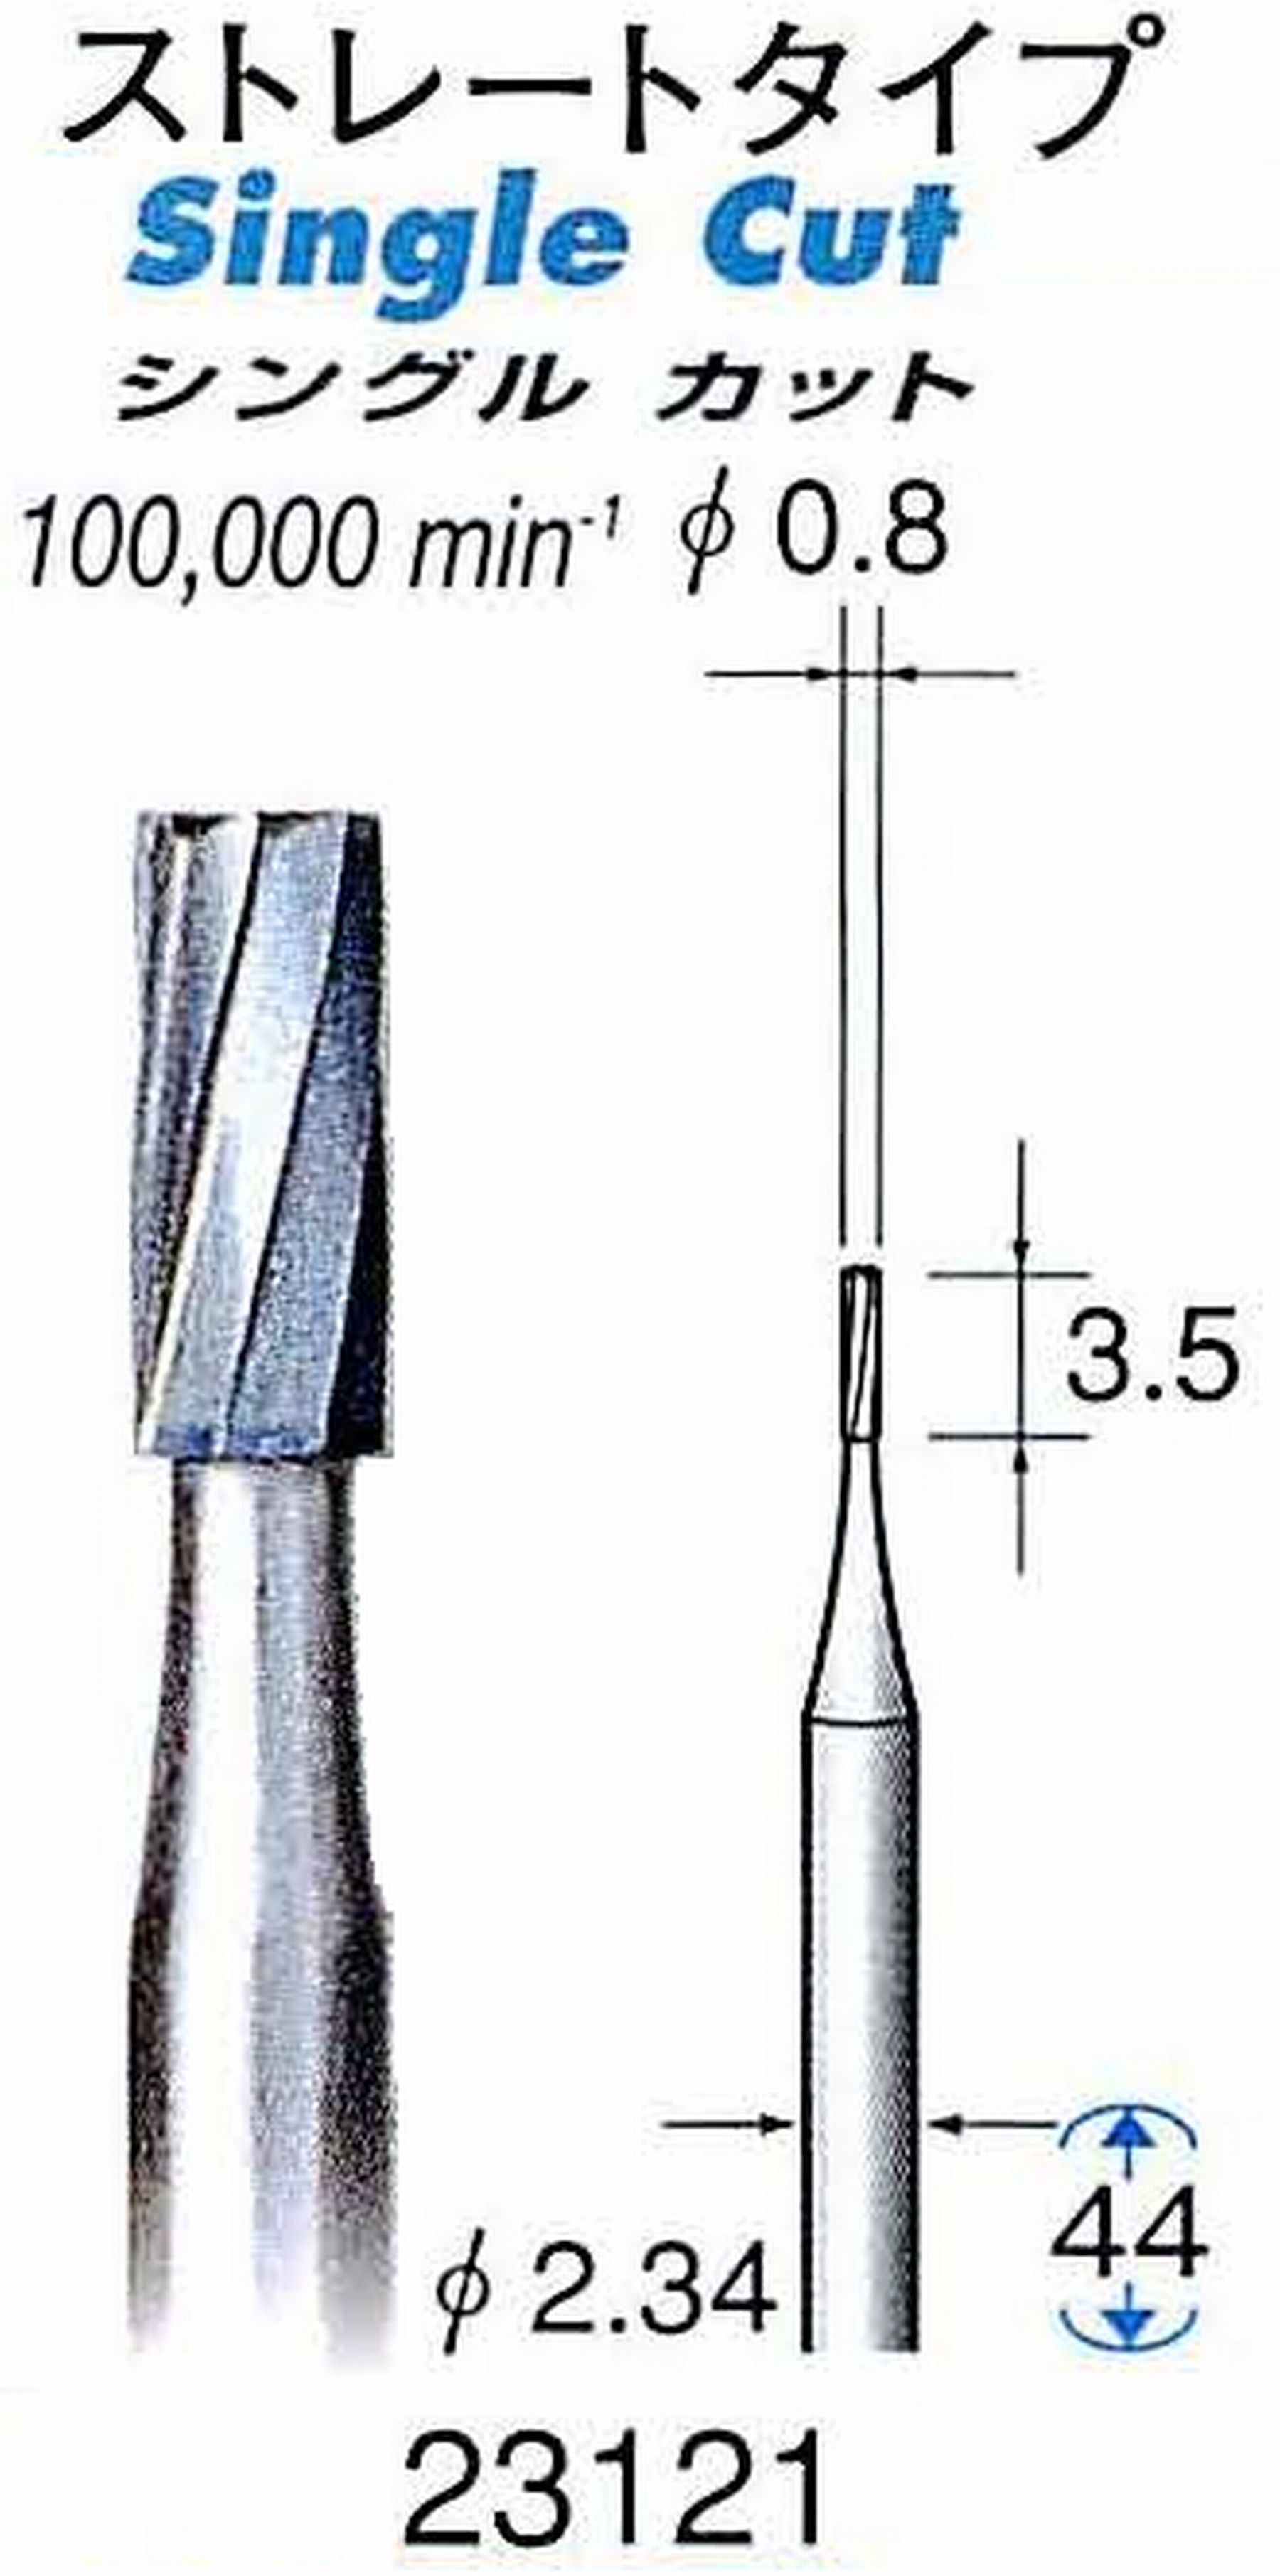 ナカニシ/NAKANISHI 超硬カッター(精密彫刻用) 軸径(シャンク)φ2.34mm 23121